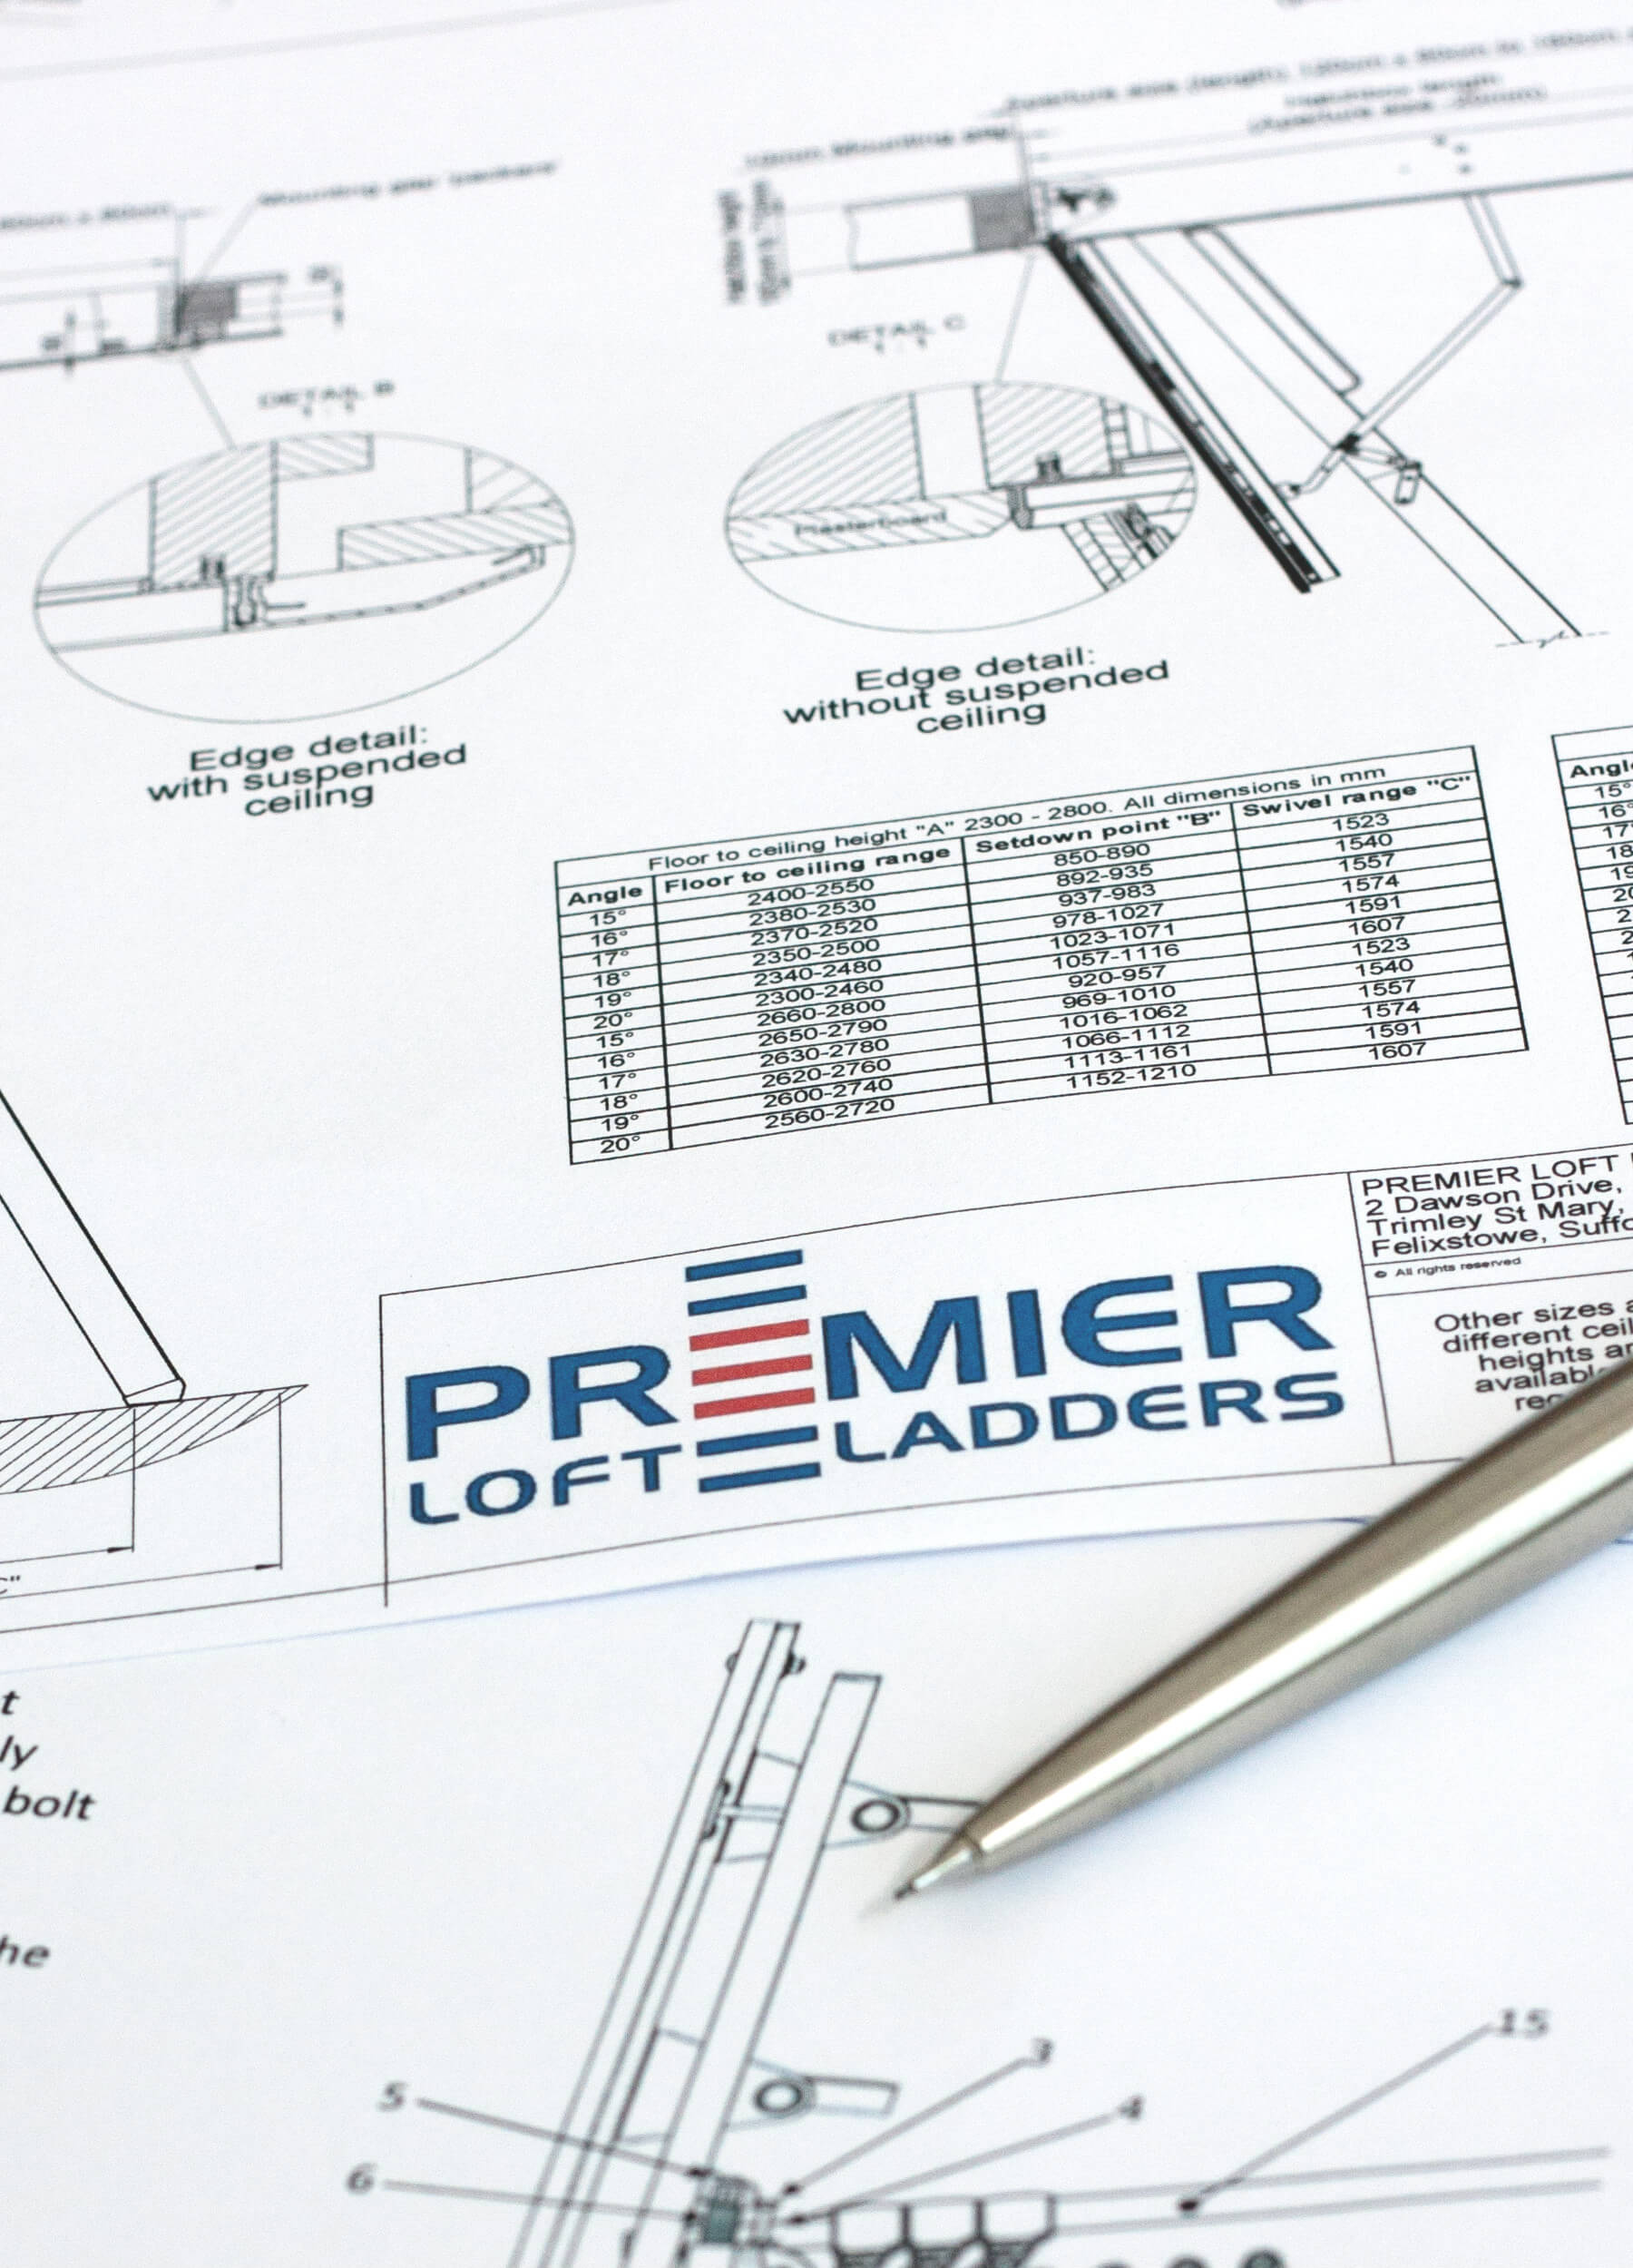 Premier Loft Ladders technical drawings